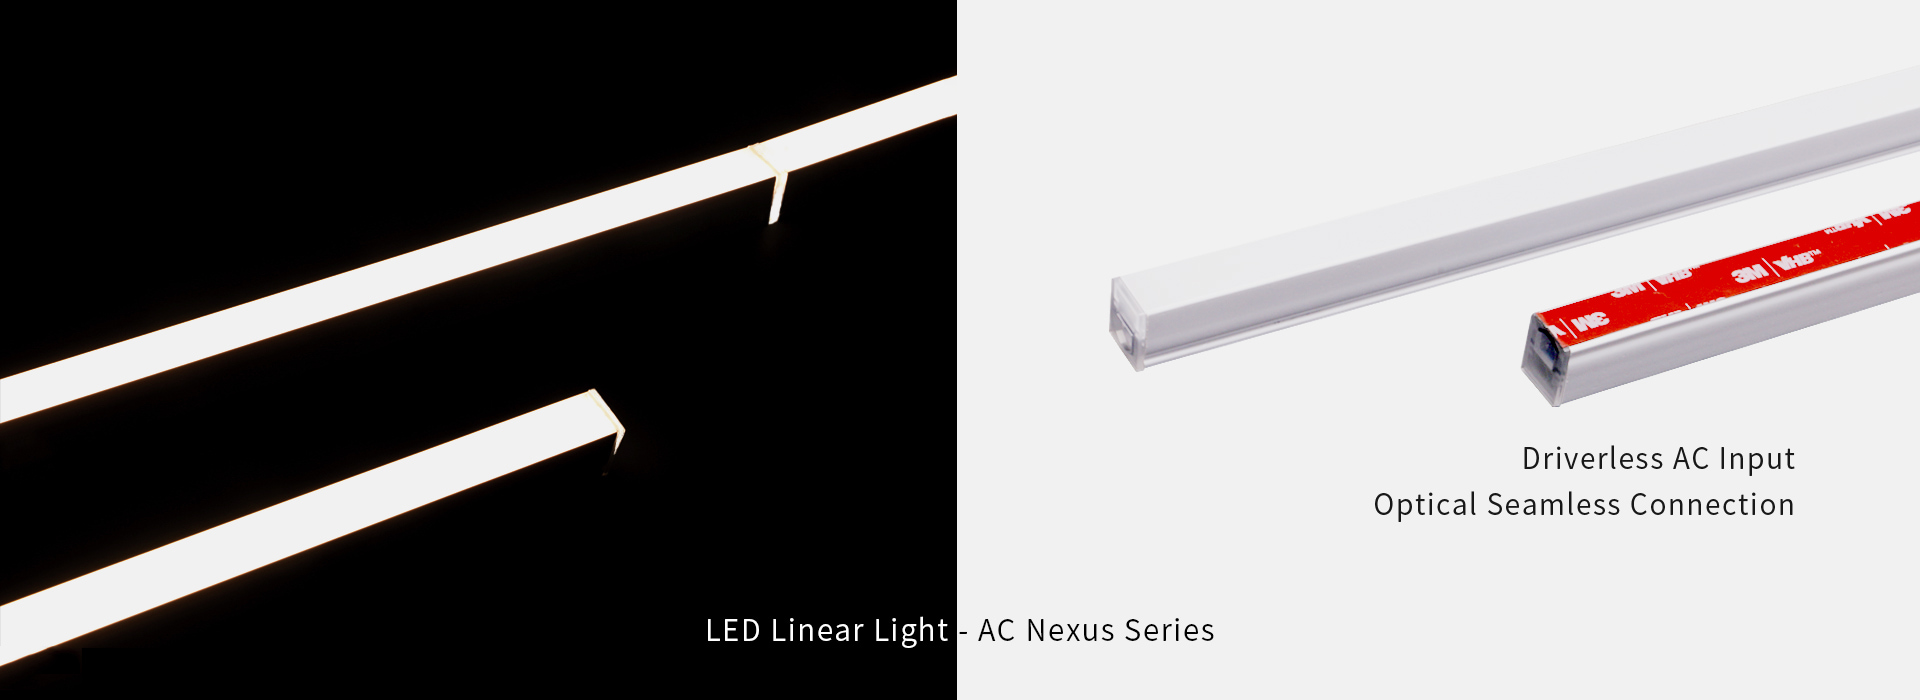 Светодиодный линейный светильник — серия переменный ток
 Нексус
